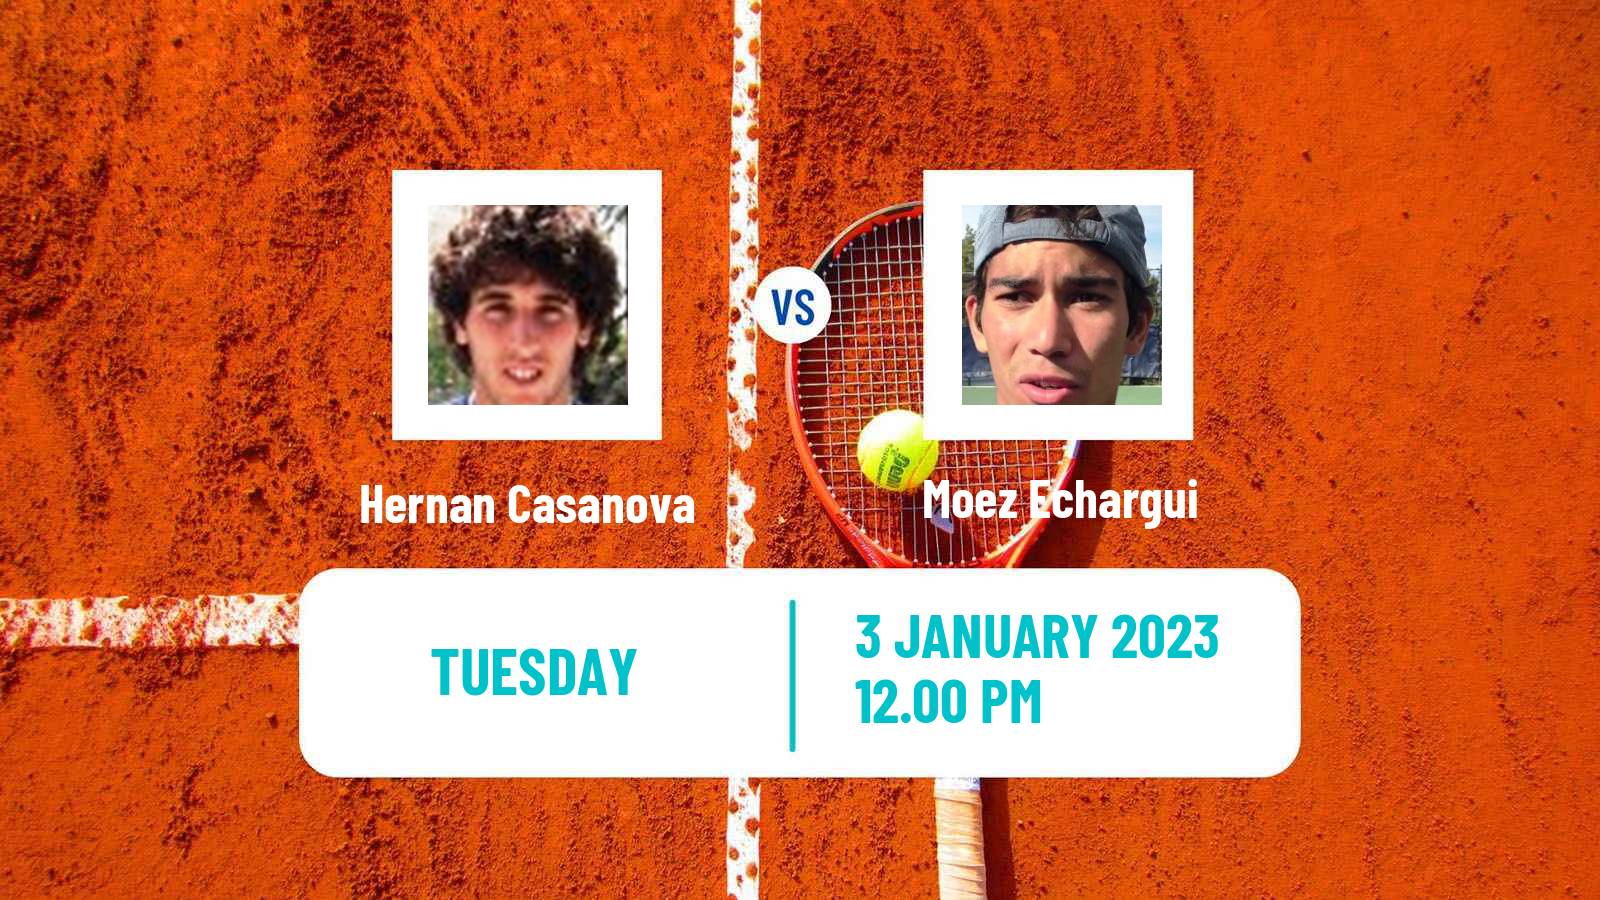 Tennis ATP Challenger Hernan Casanova - Moez Echargui